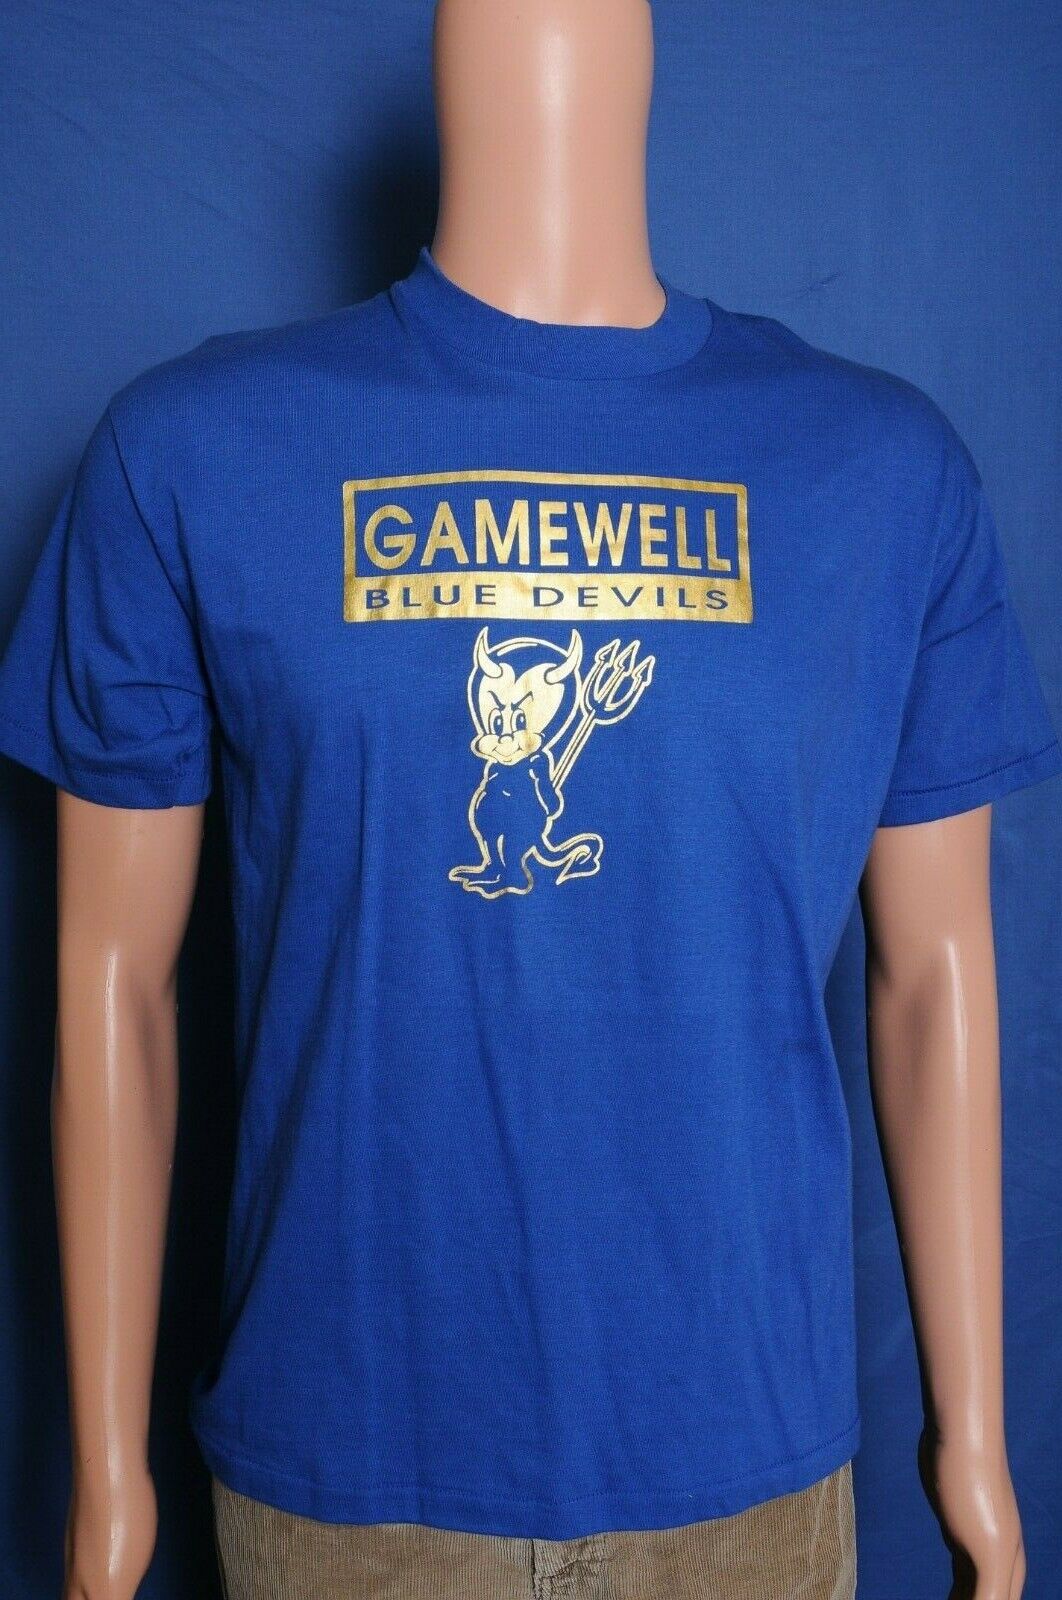 Vintage 80s Gamewell School Blue Devils Lenoir NC blue single stitch t shirt M